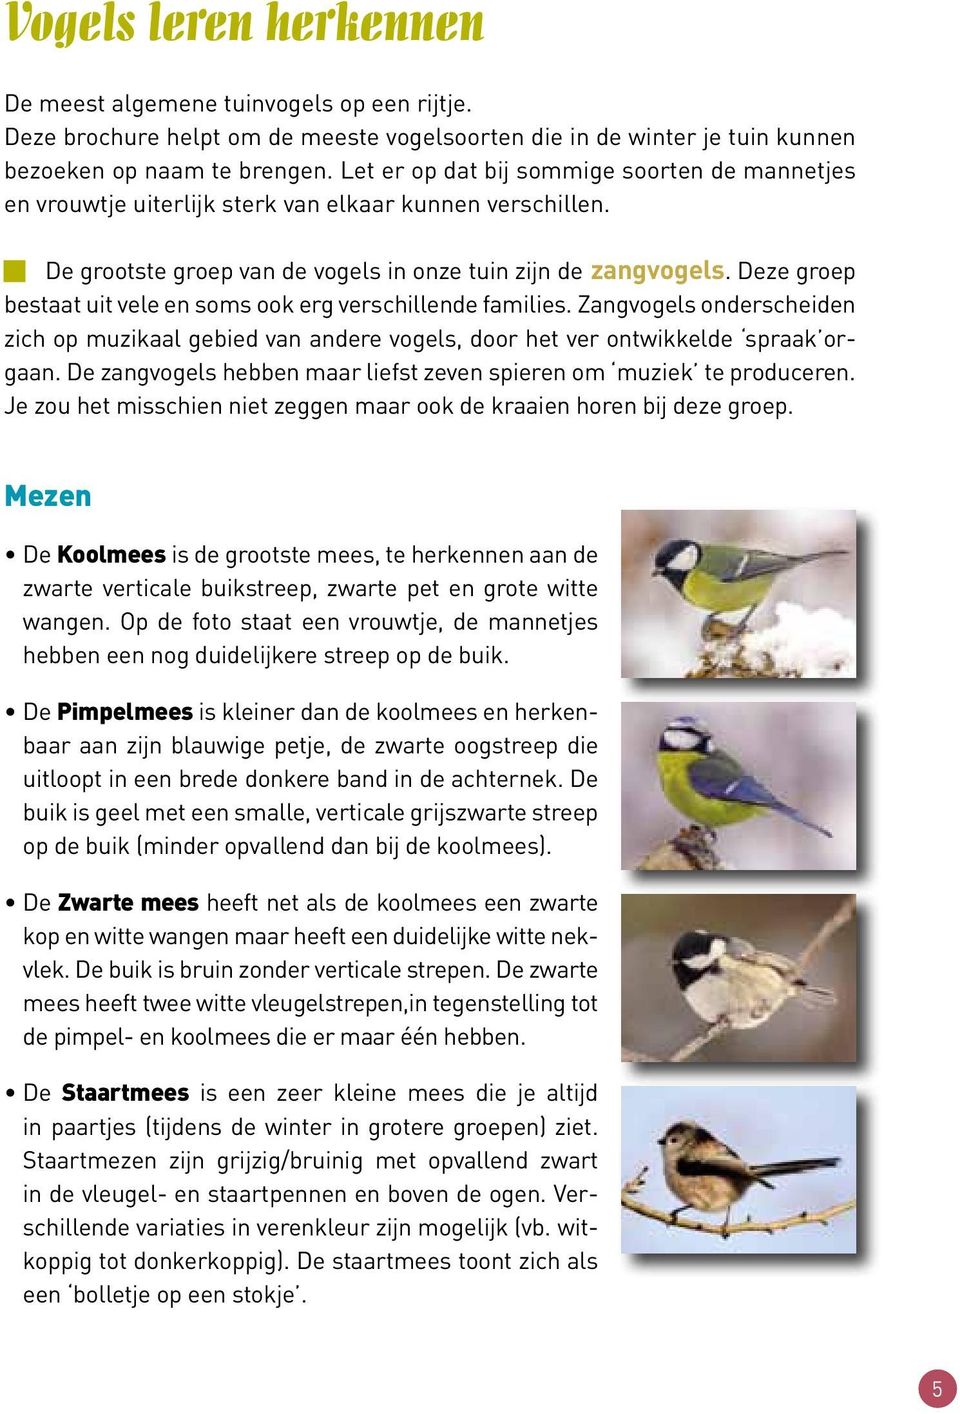 Deze groep bestaat uit vele en soms ook erg verschillende families. Zangvogels onderscheiden zich op muzikaal gebied van andere vogels, door het ver ontwikkelde spraak orgaan.